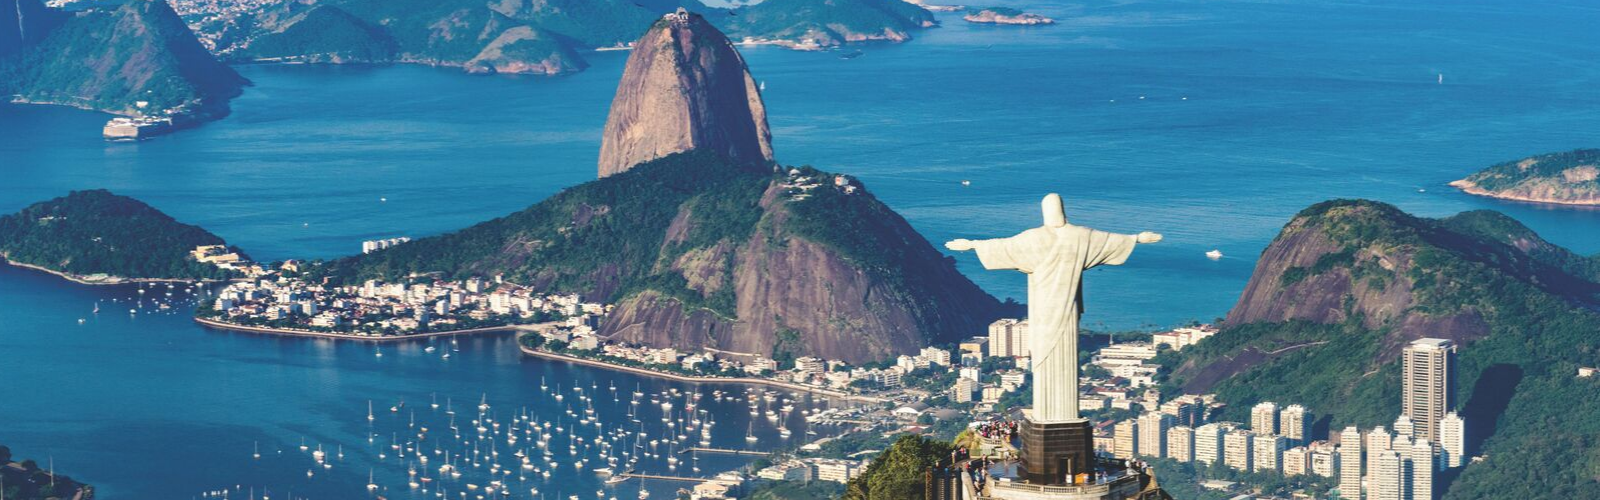 Brazil: Rio Service Adventure